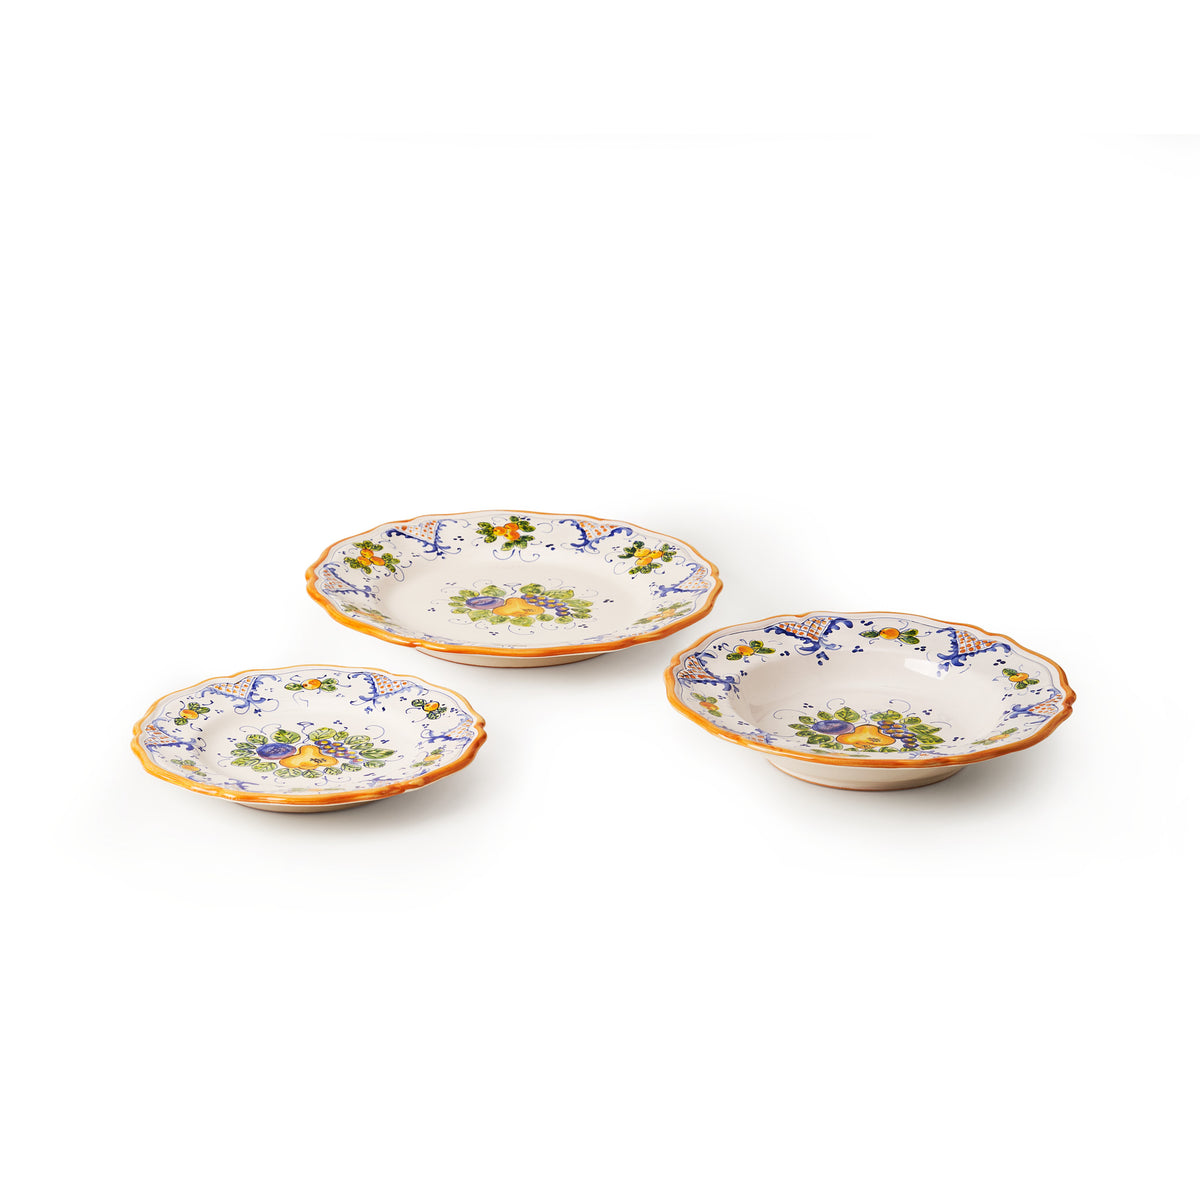 sbigoli-artisan-ceramics-plates-set-autumn-autunno-pottery